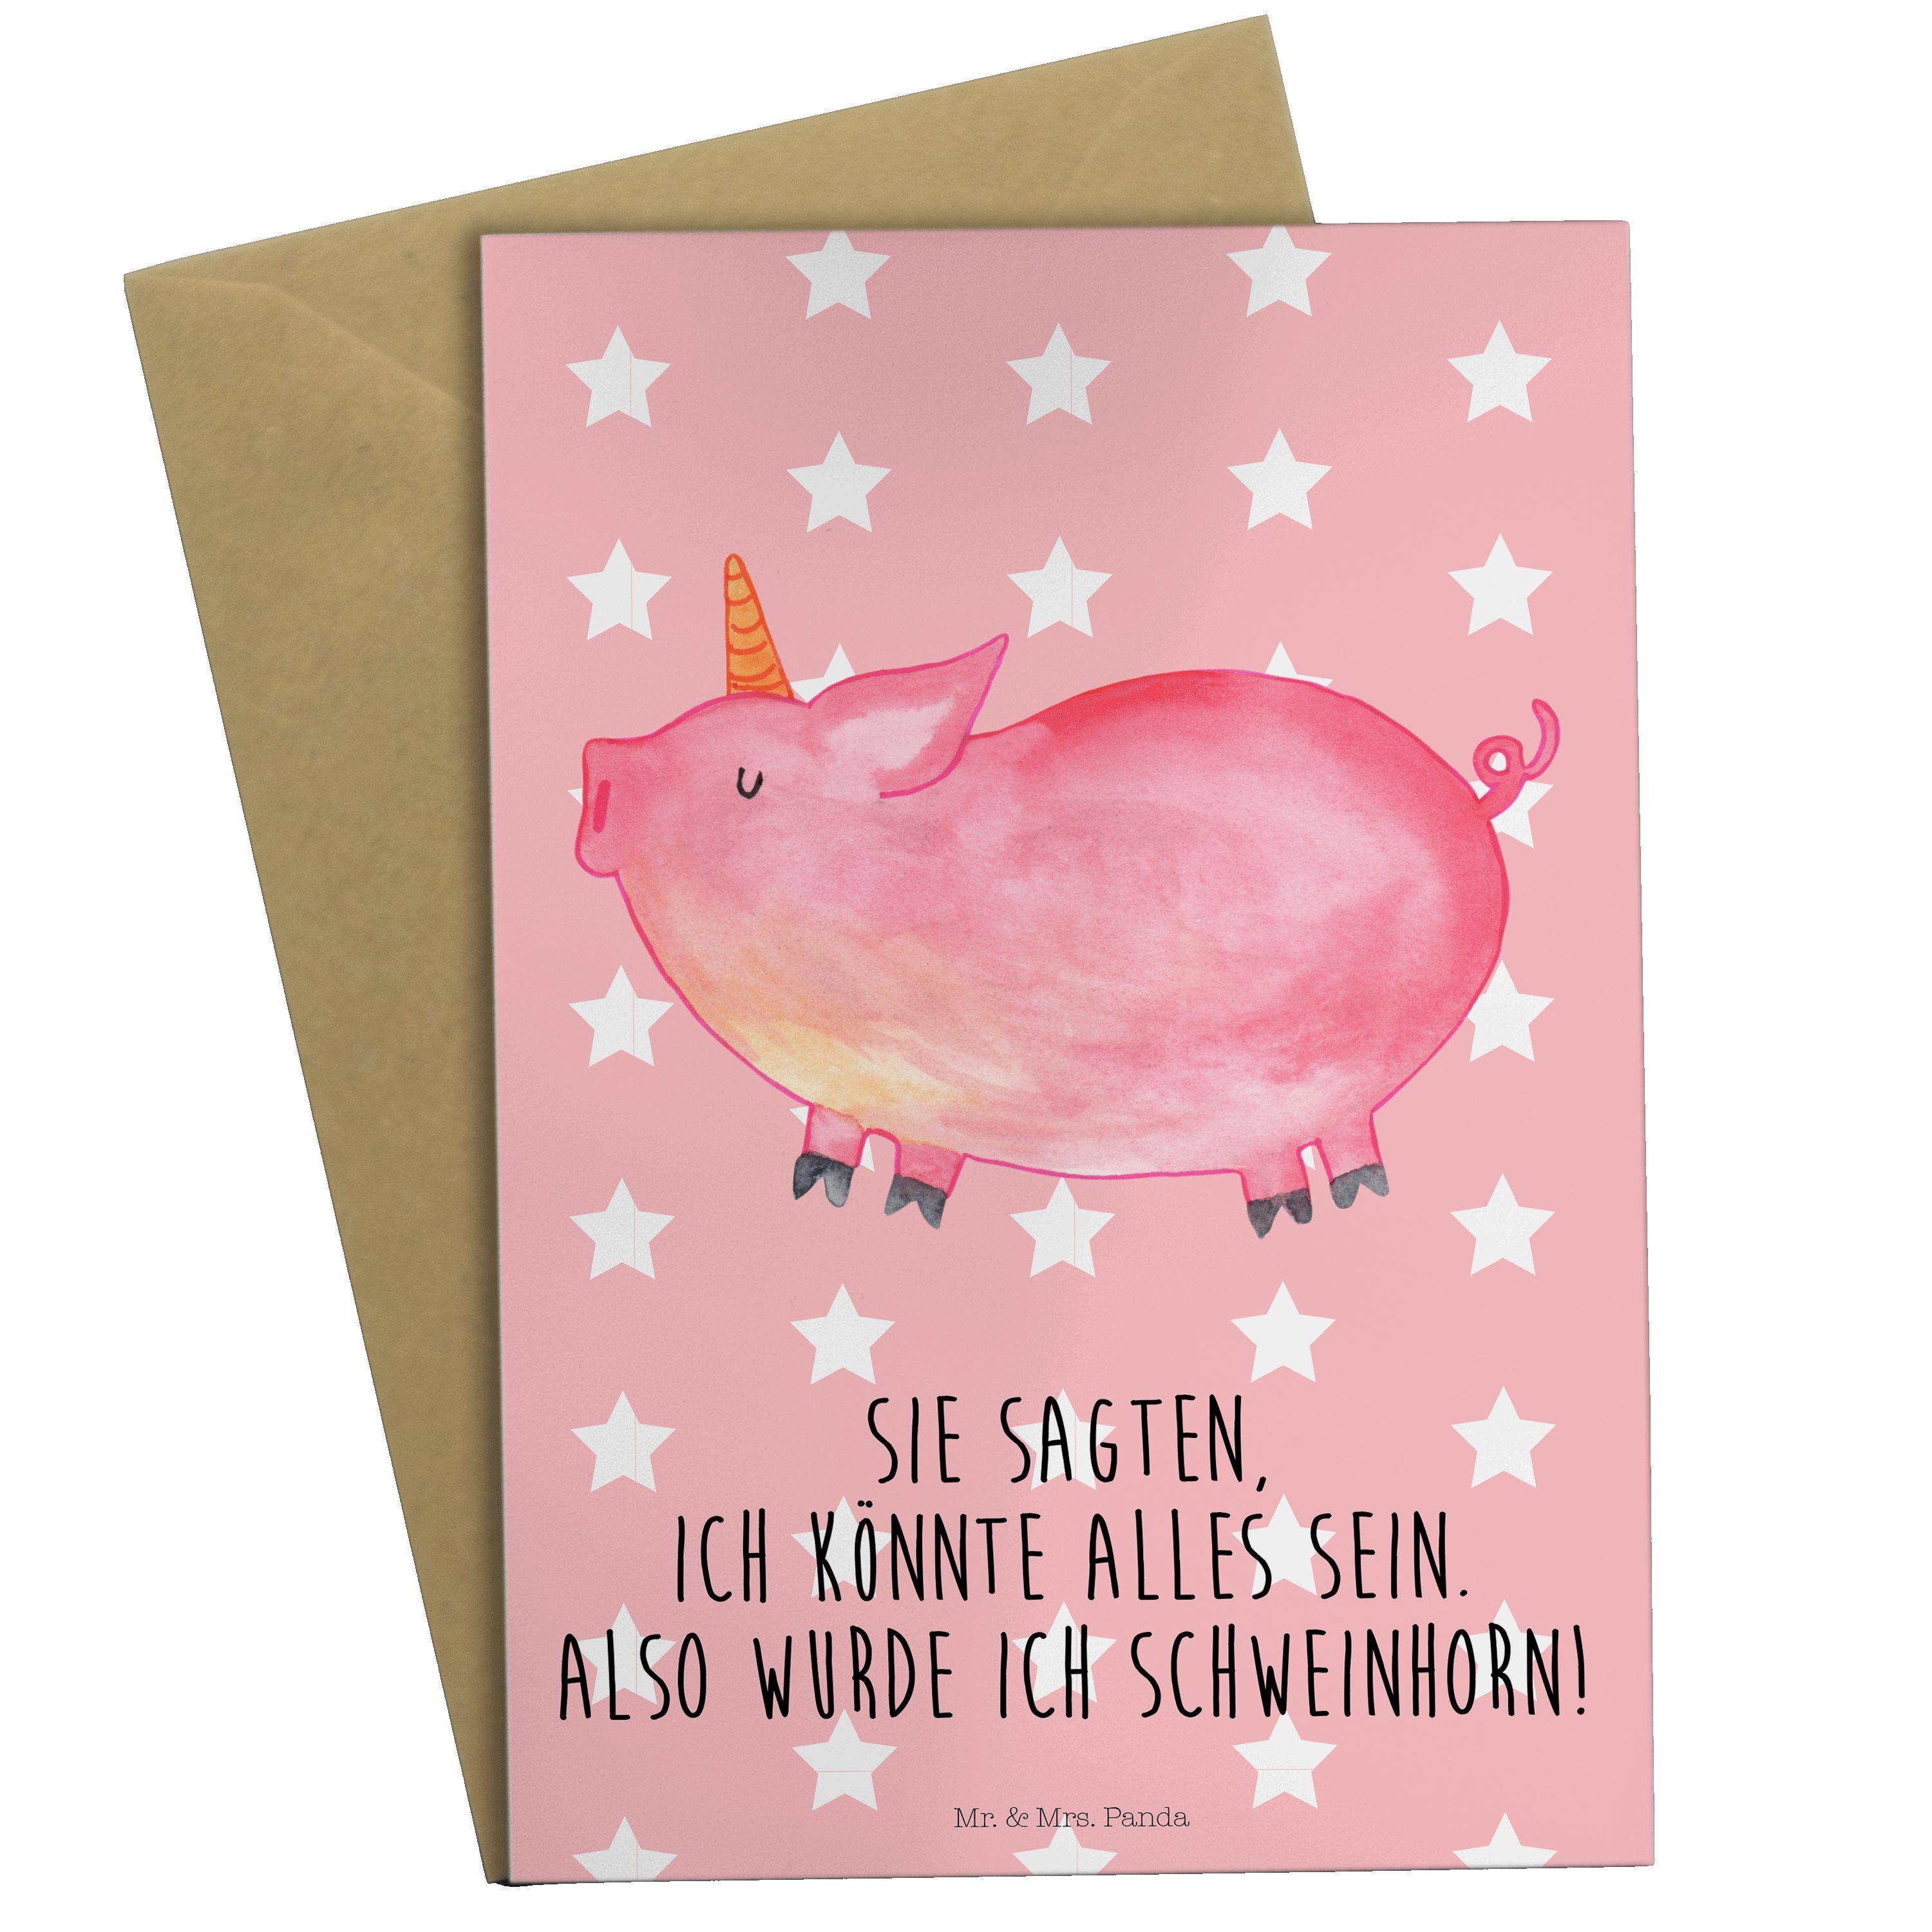 Mr. & Mrs. Pastell Einla - Geschenk, Einhorn - Rot Glückwunschkarte, Panda Schweinhorn Grußkarte